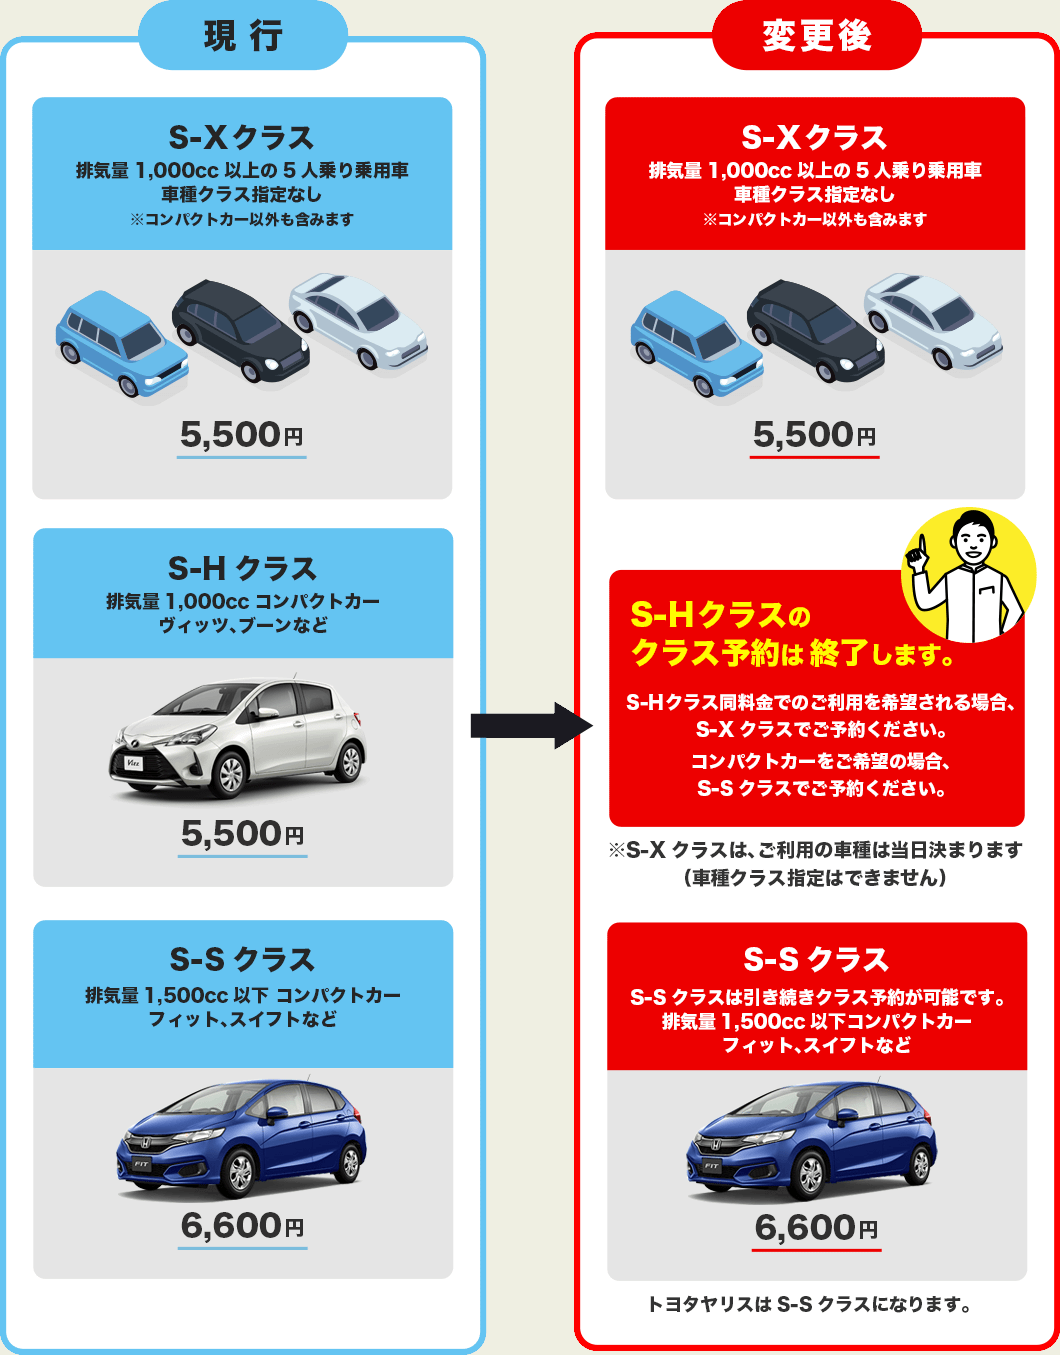 車種クラス一部変更のお知らせ ニッポンレンタカー